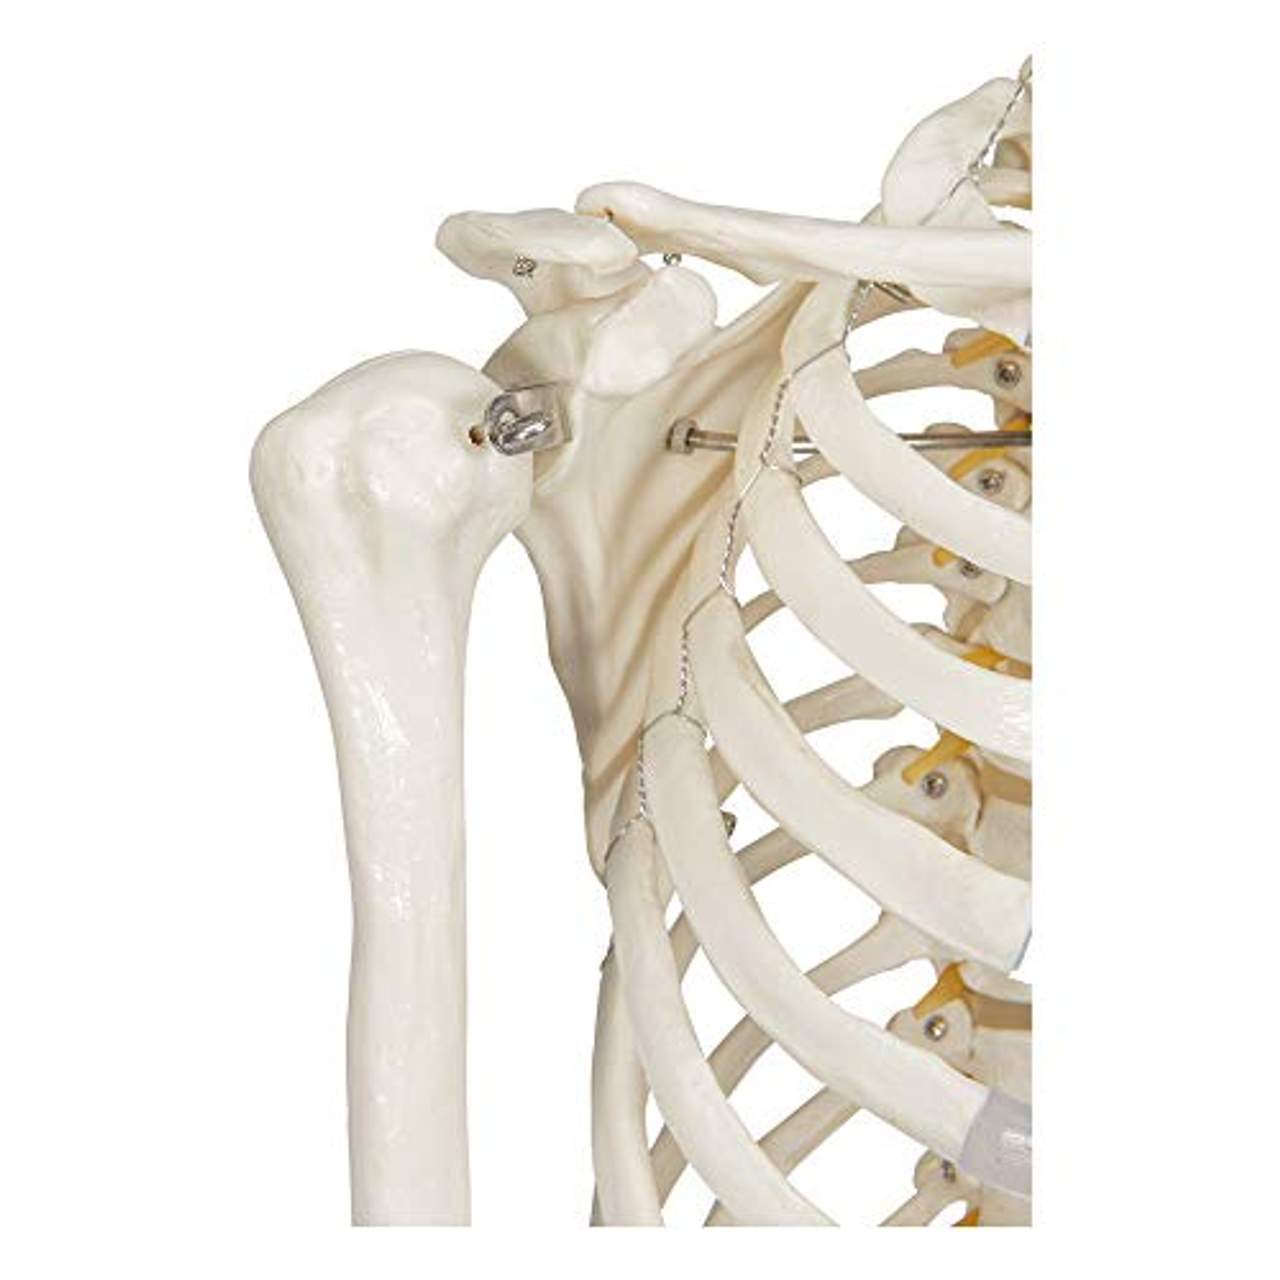 Elementary Anatomy Skelett Buddy the Budget Skeleton